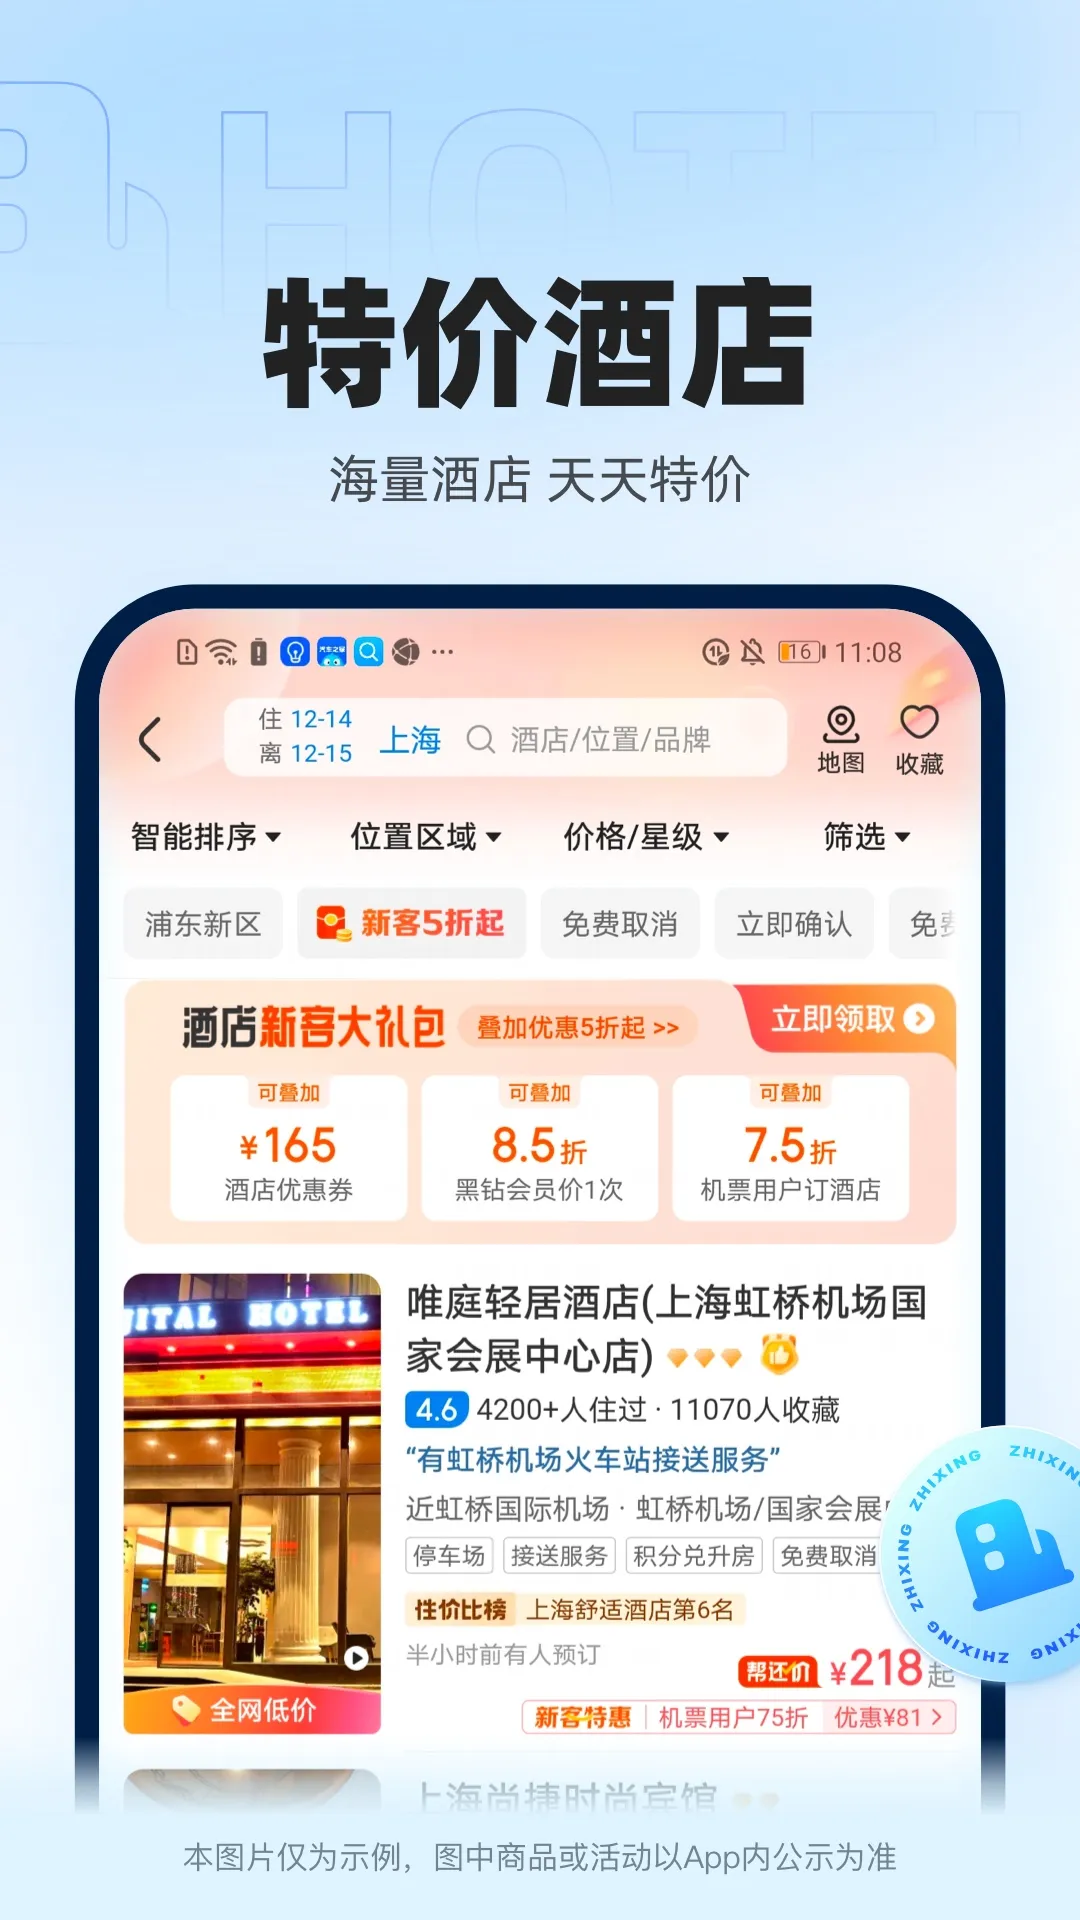 香港城市售票网app推荐 好用的购票